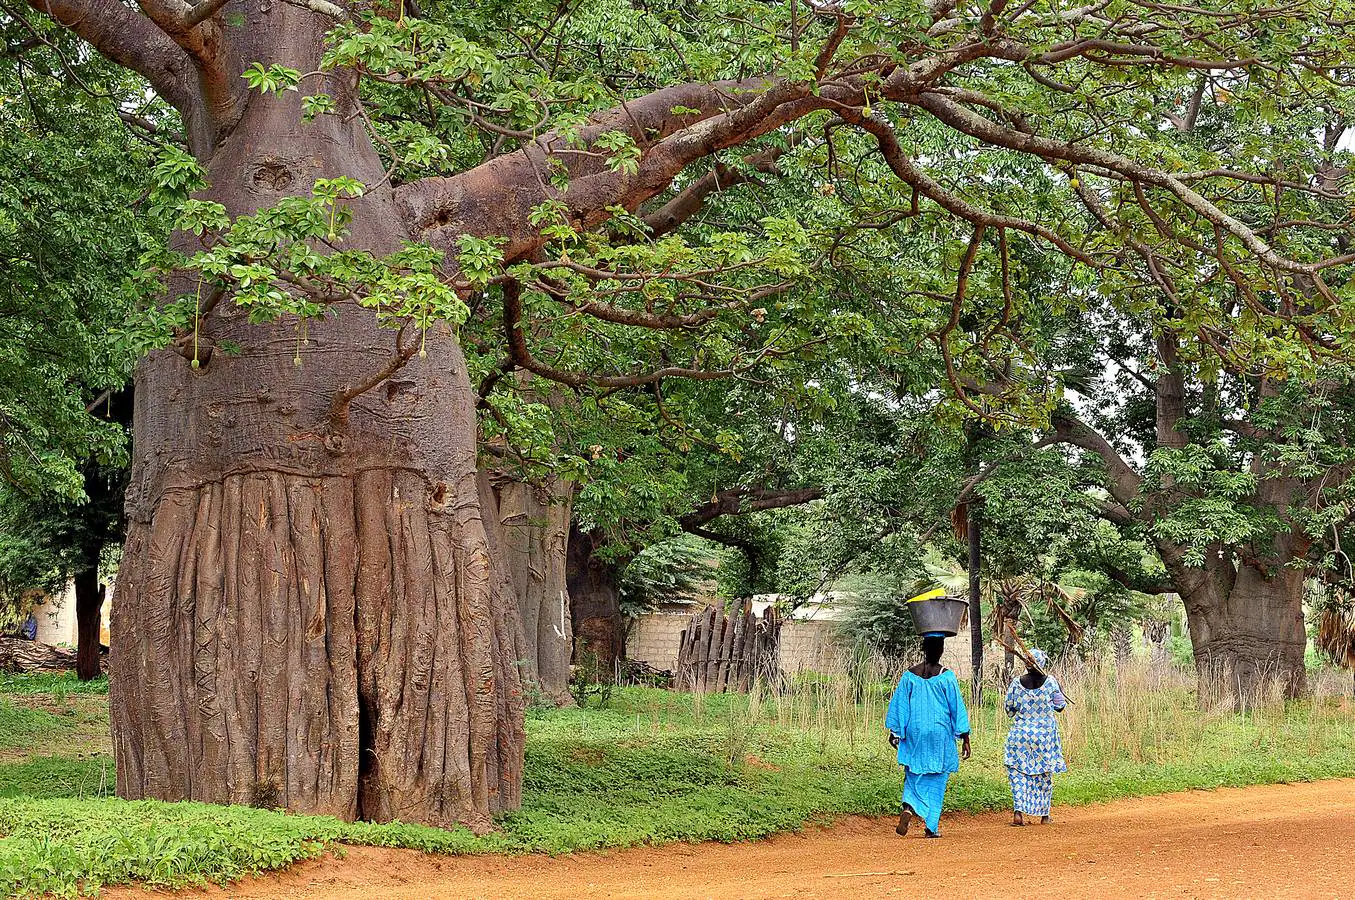 Imagen de varios árboles baobab.